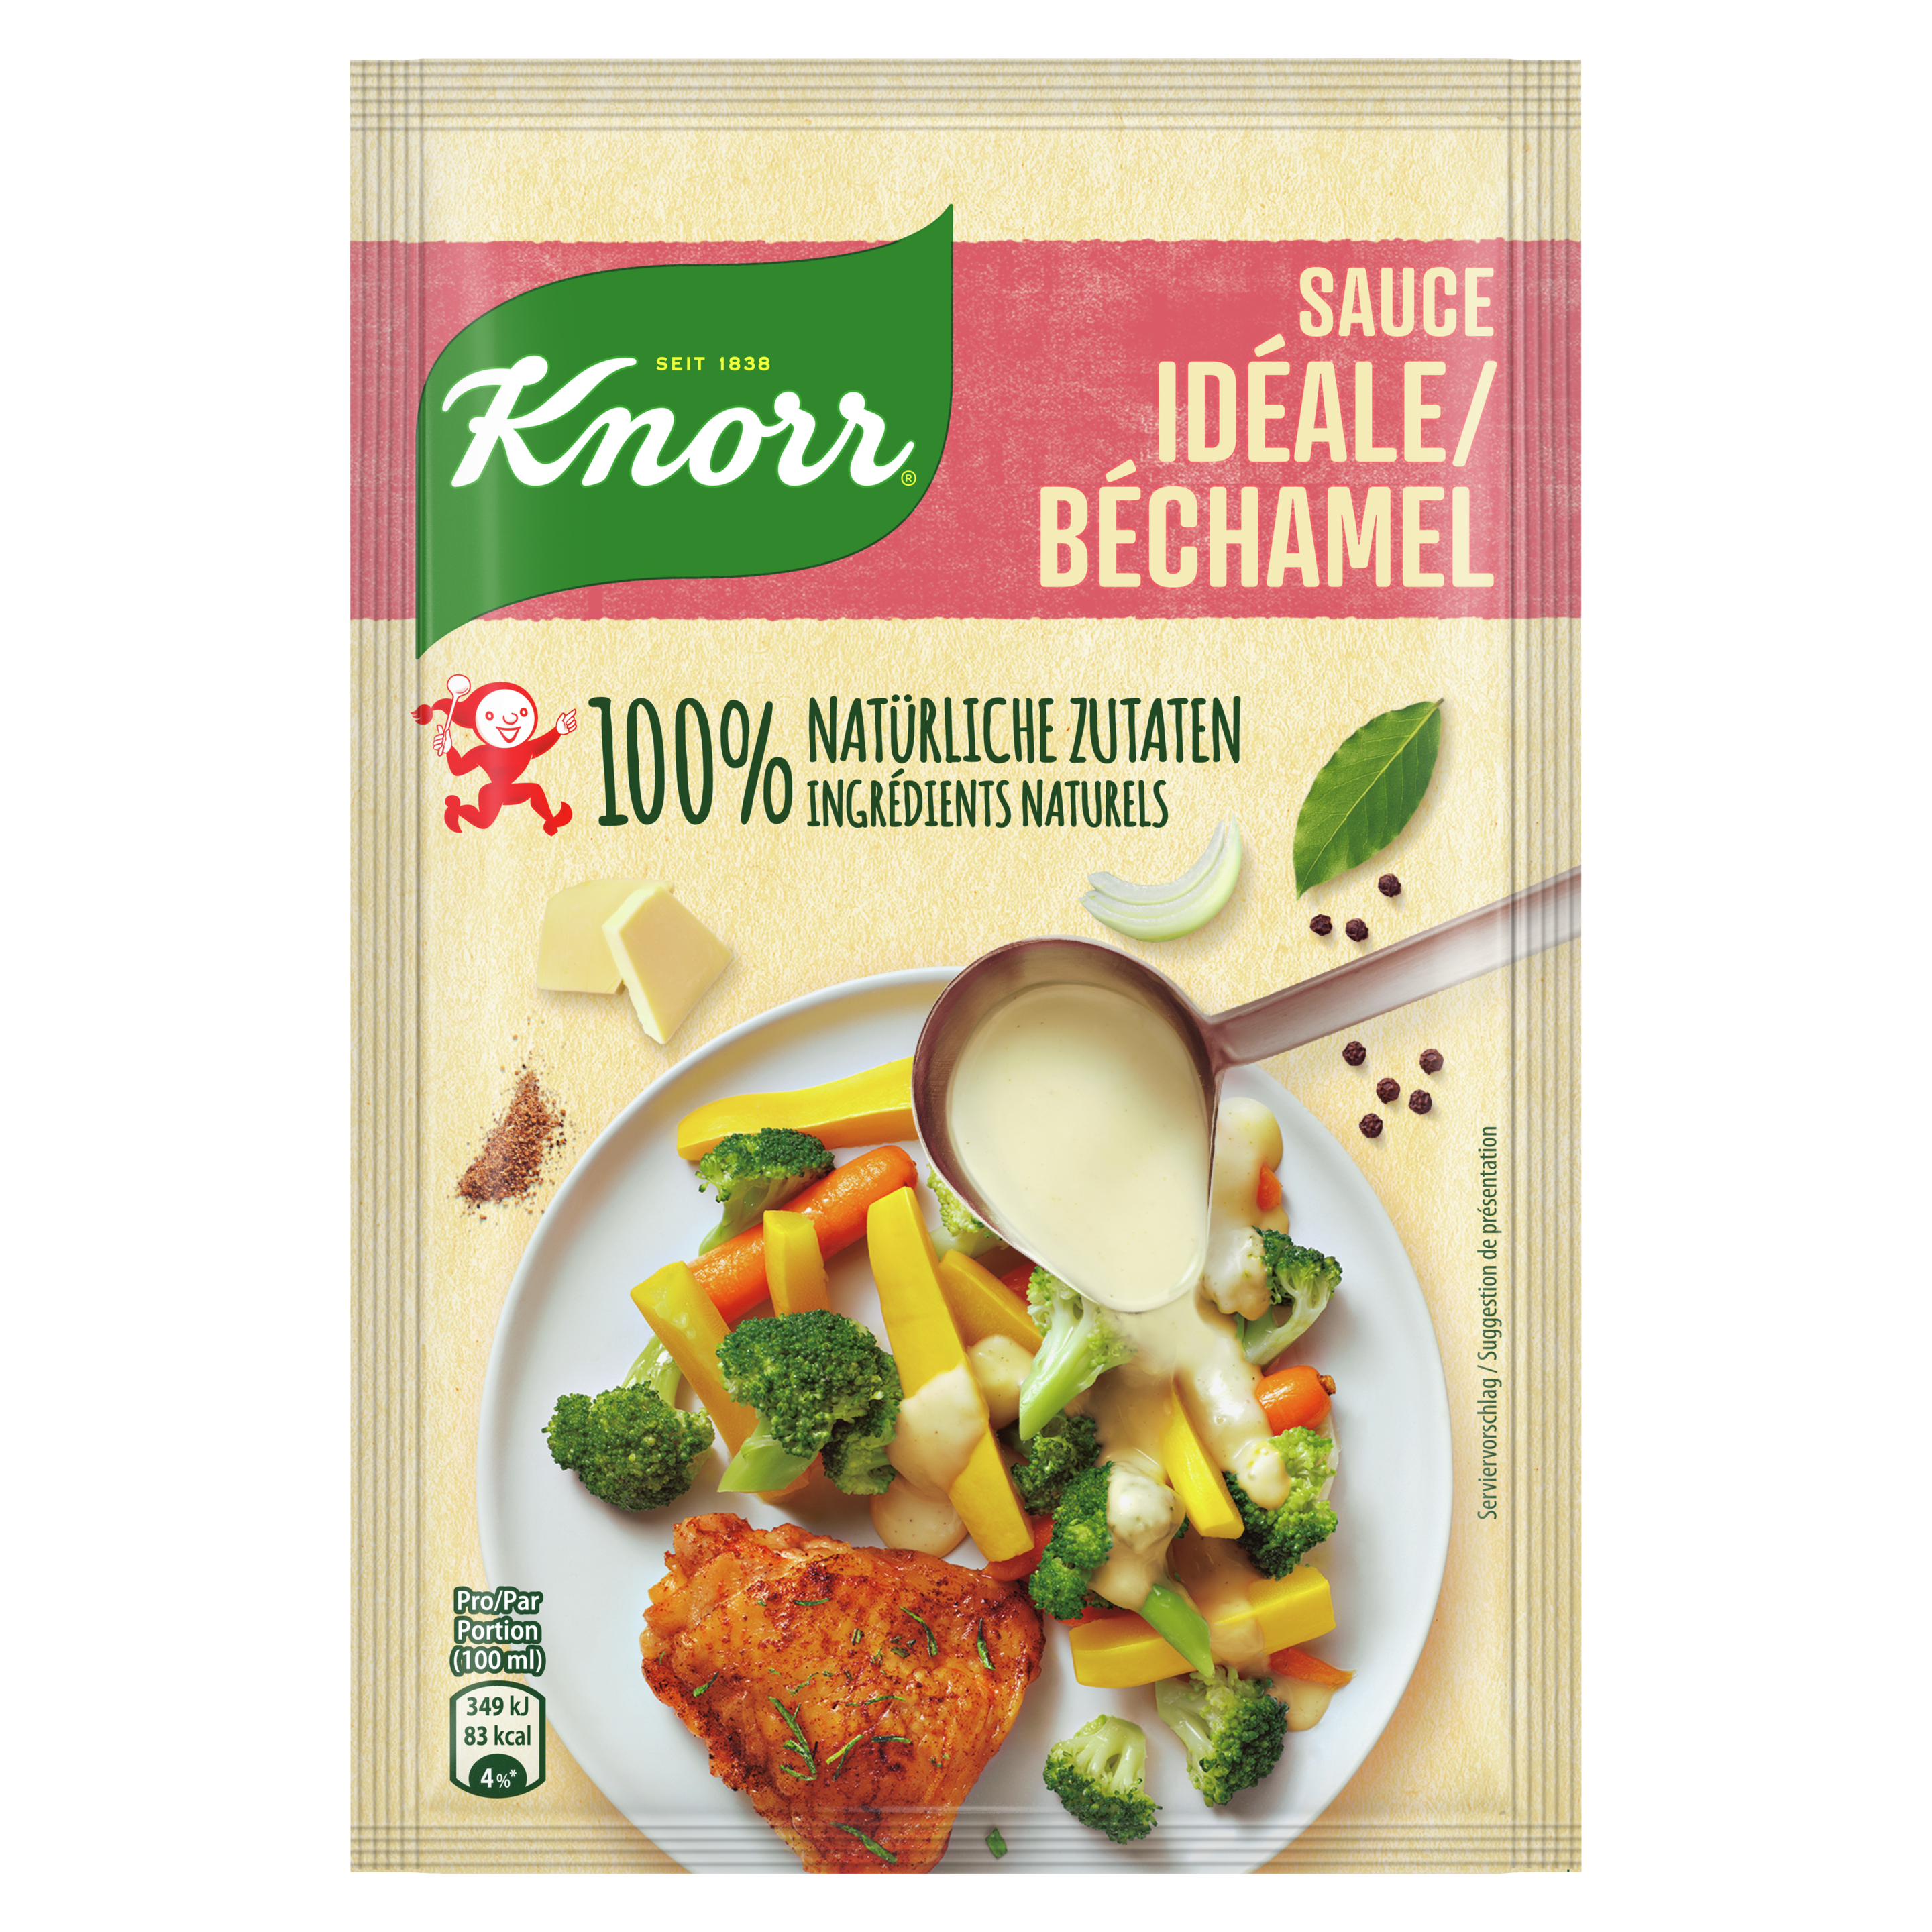 KNORR ingrédients 100% naturels Sauce idéale / béchamel sachet 5 portions